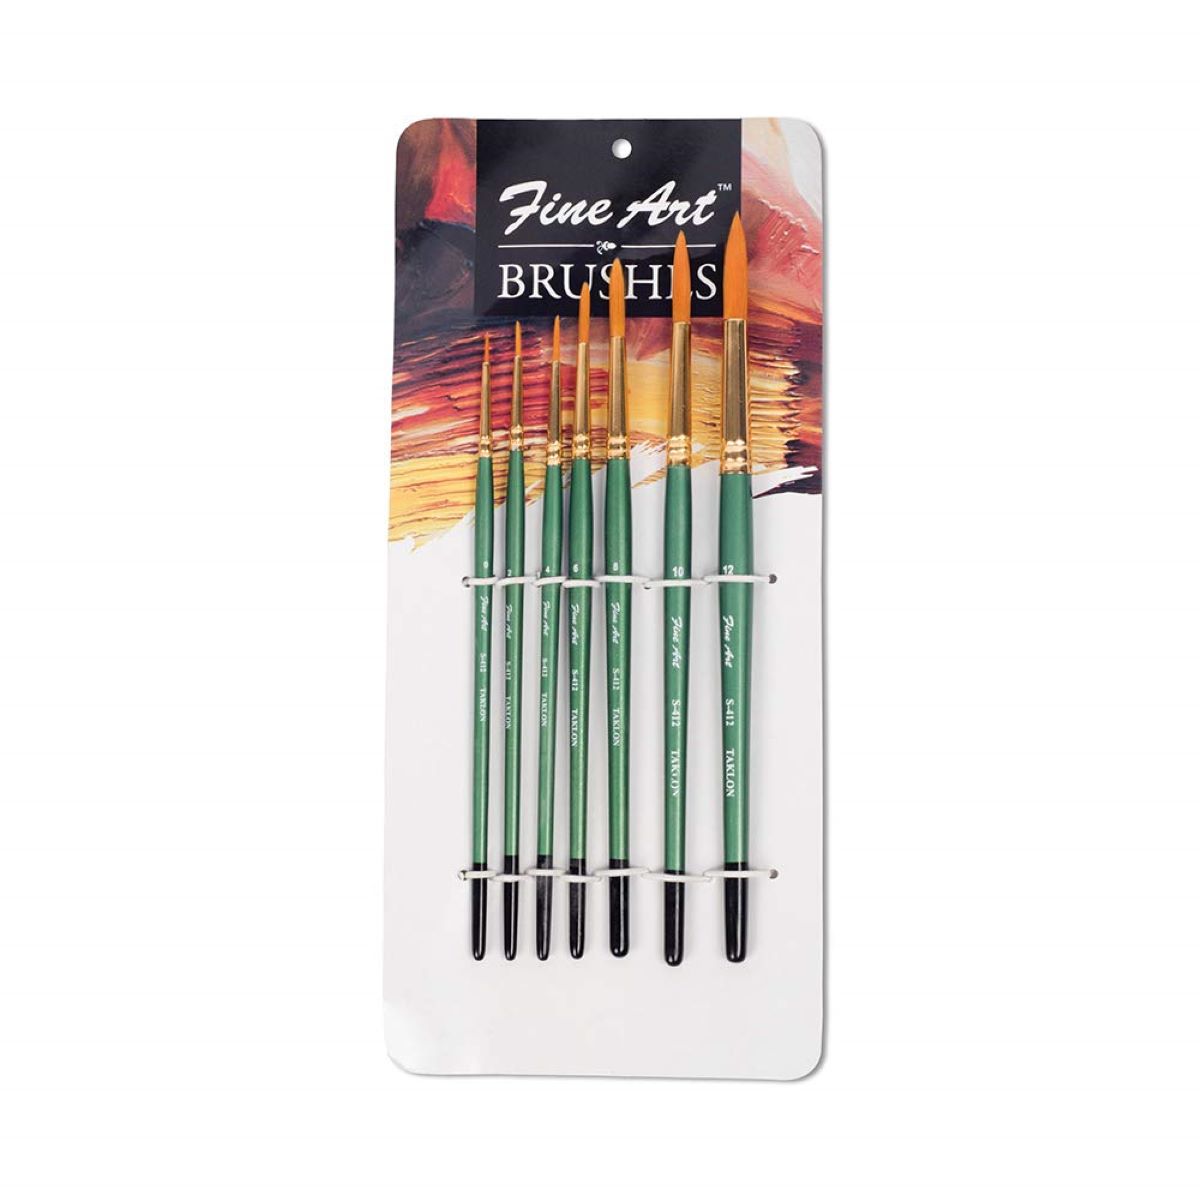 Artist Fan Paint Brushes Set 9Pcs - Soft Anti-Shedding Nylon Hair